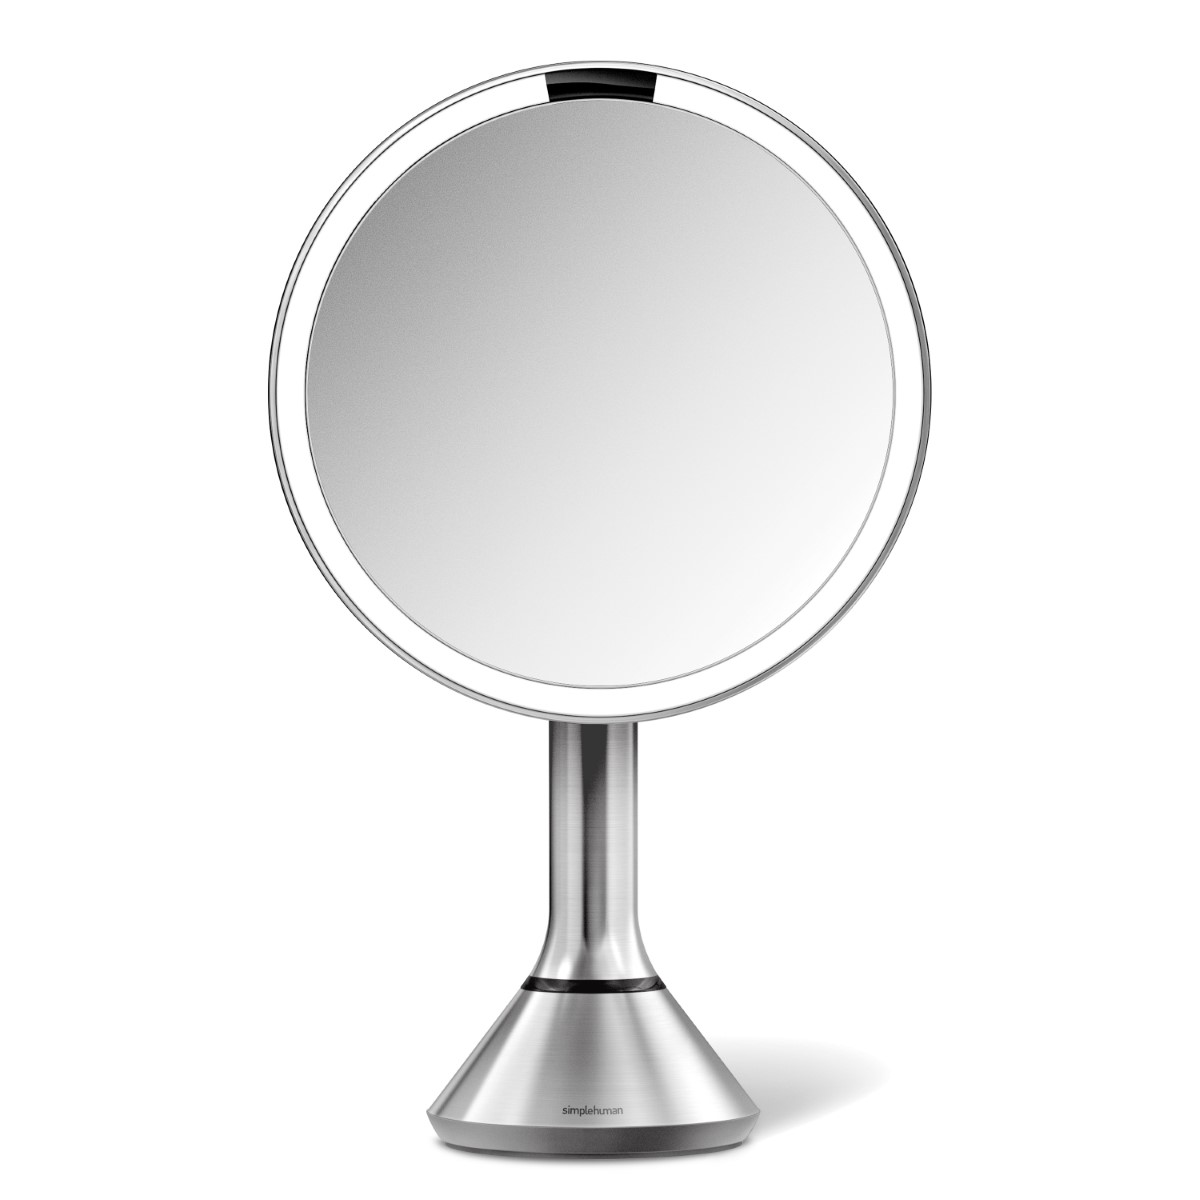 مستشعر بسيط يعمل باللمس للتحكم في المرآة بمقاس ٢٠ سم باللون الفضي